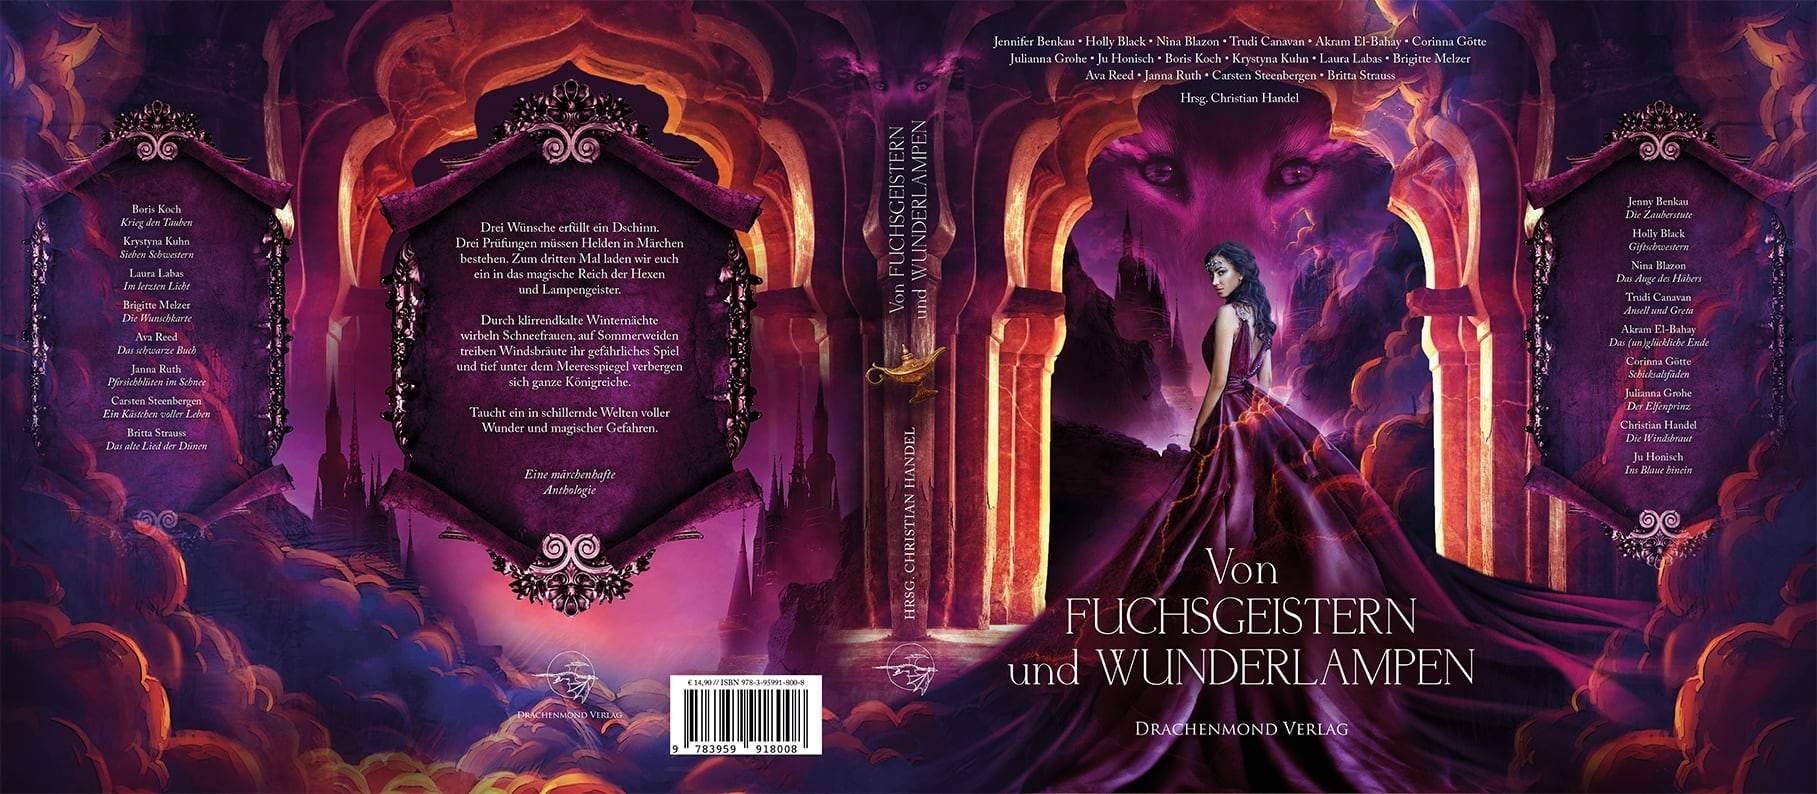 Von Fuchsgeistern und Wunderlampen - Christian Handel (Hrsg.) | Drachenmond Verlag